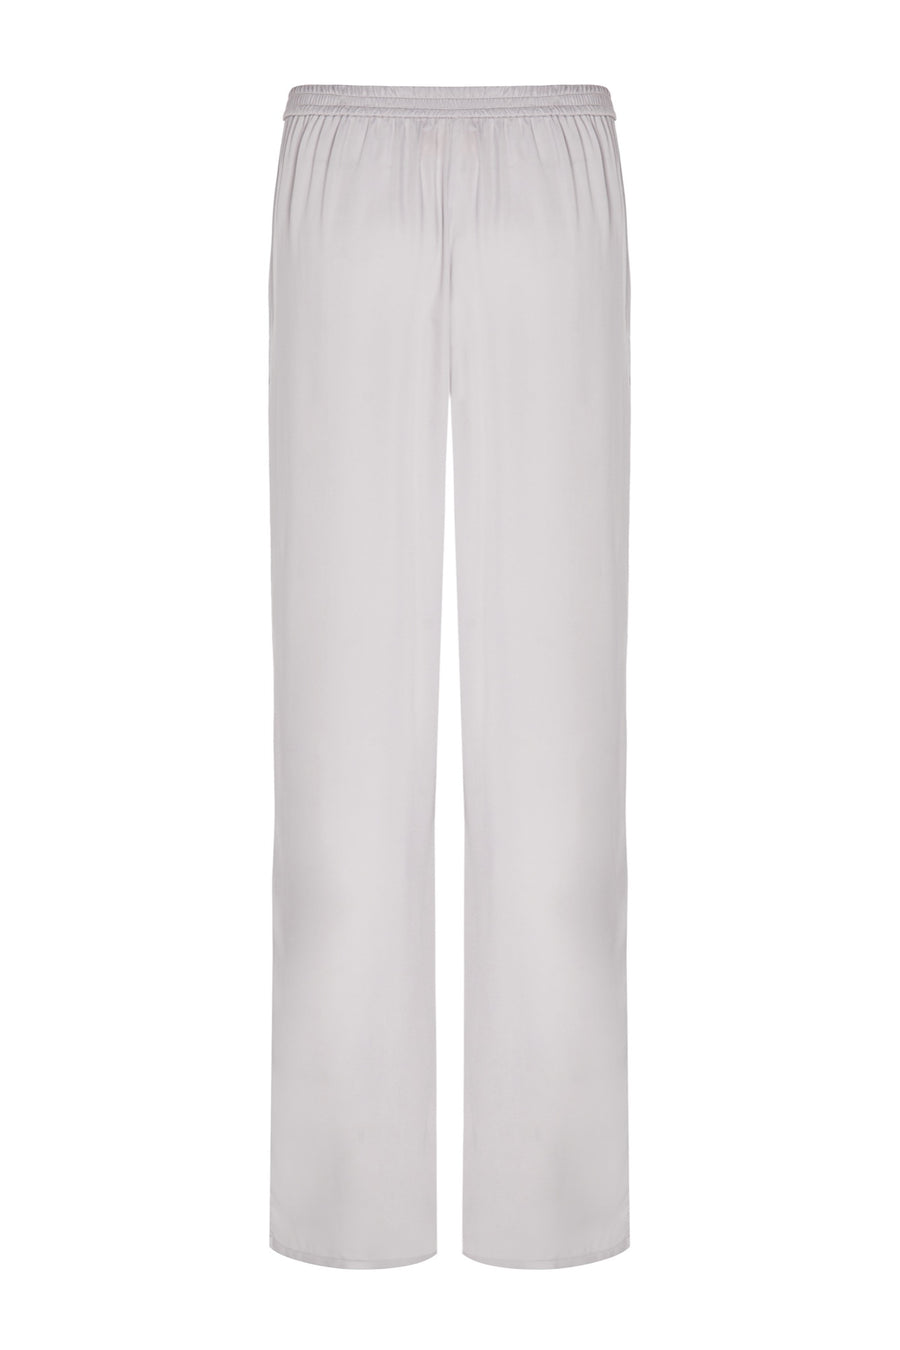 Short sleeve vegan silk pyjama bottoms